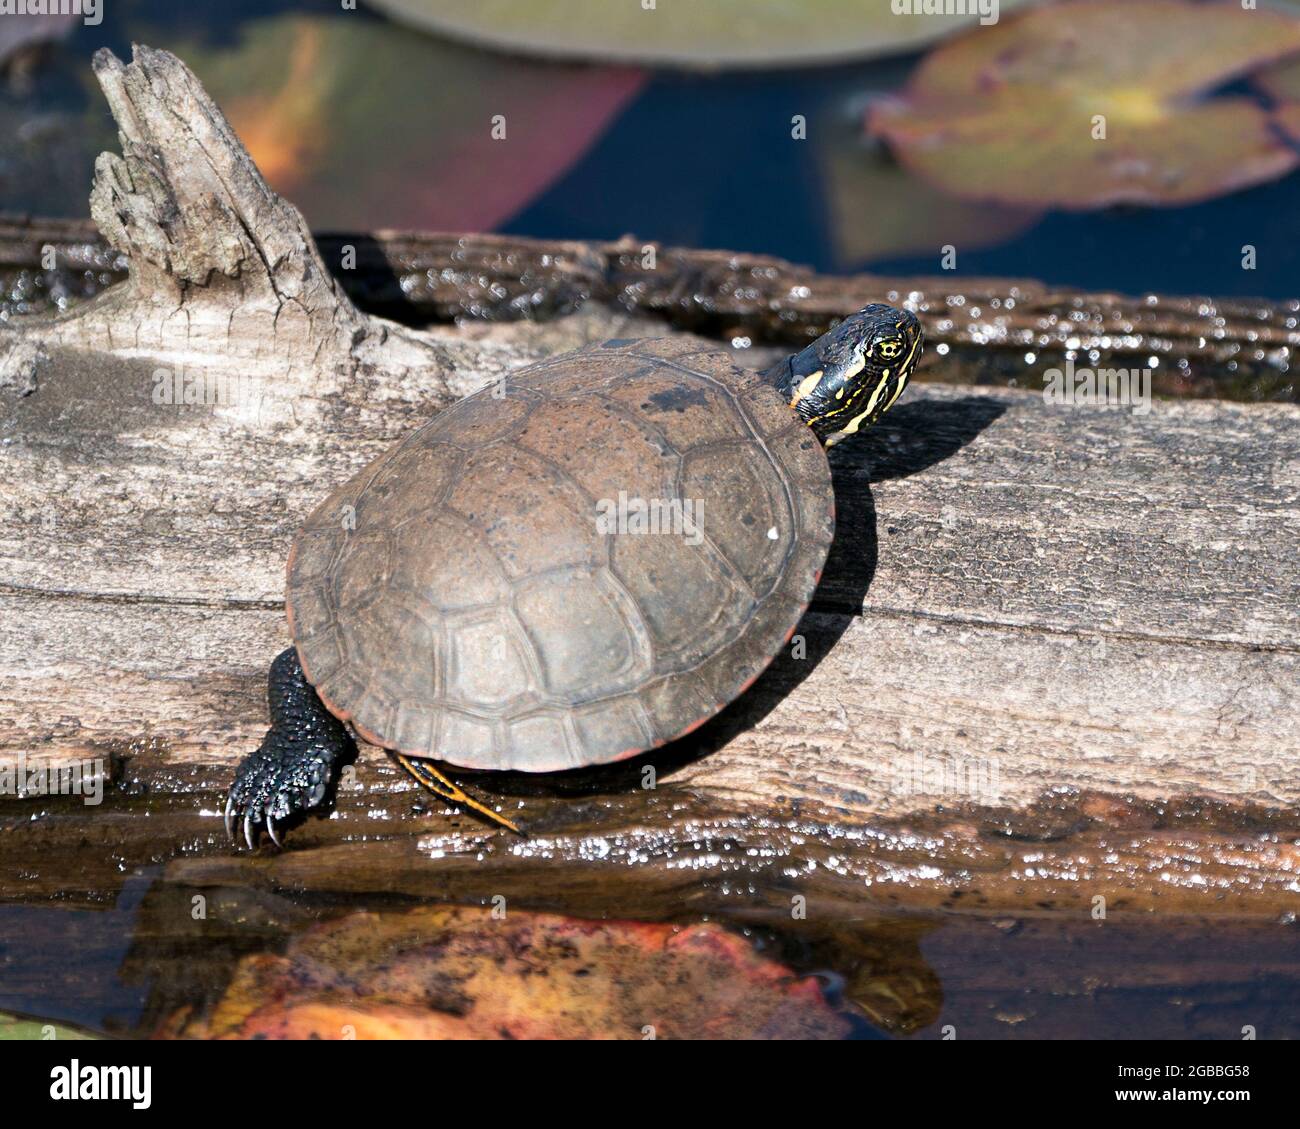 Pintó tortuga en un tronco en el estanque con estanque de nenúfares, lirios de agua, y exhibiendo su caparazón de tortuga, cabeza, patas en su medio ambiente y hábitat. Turt Foto de stock